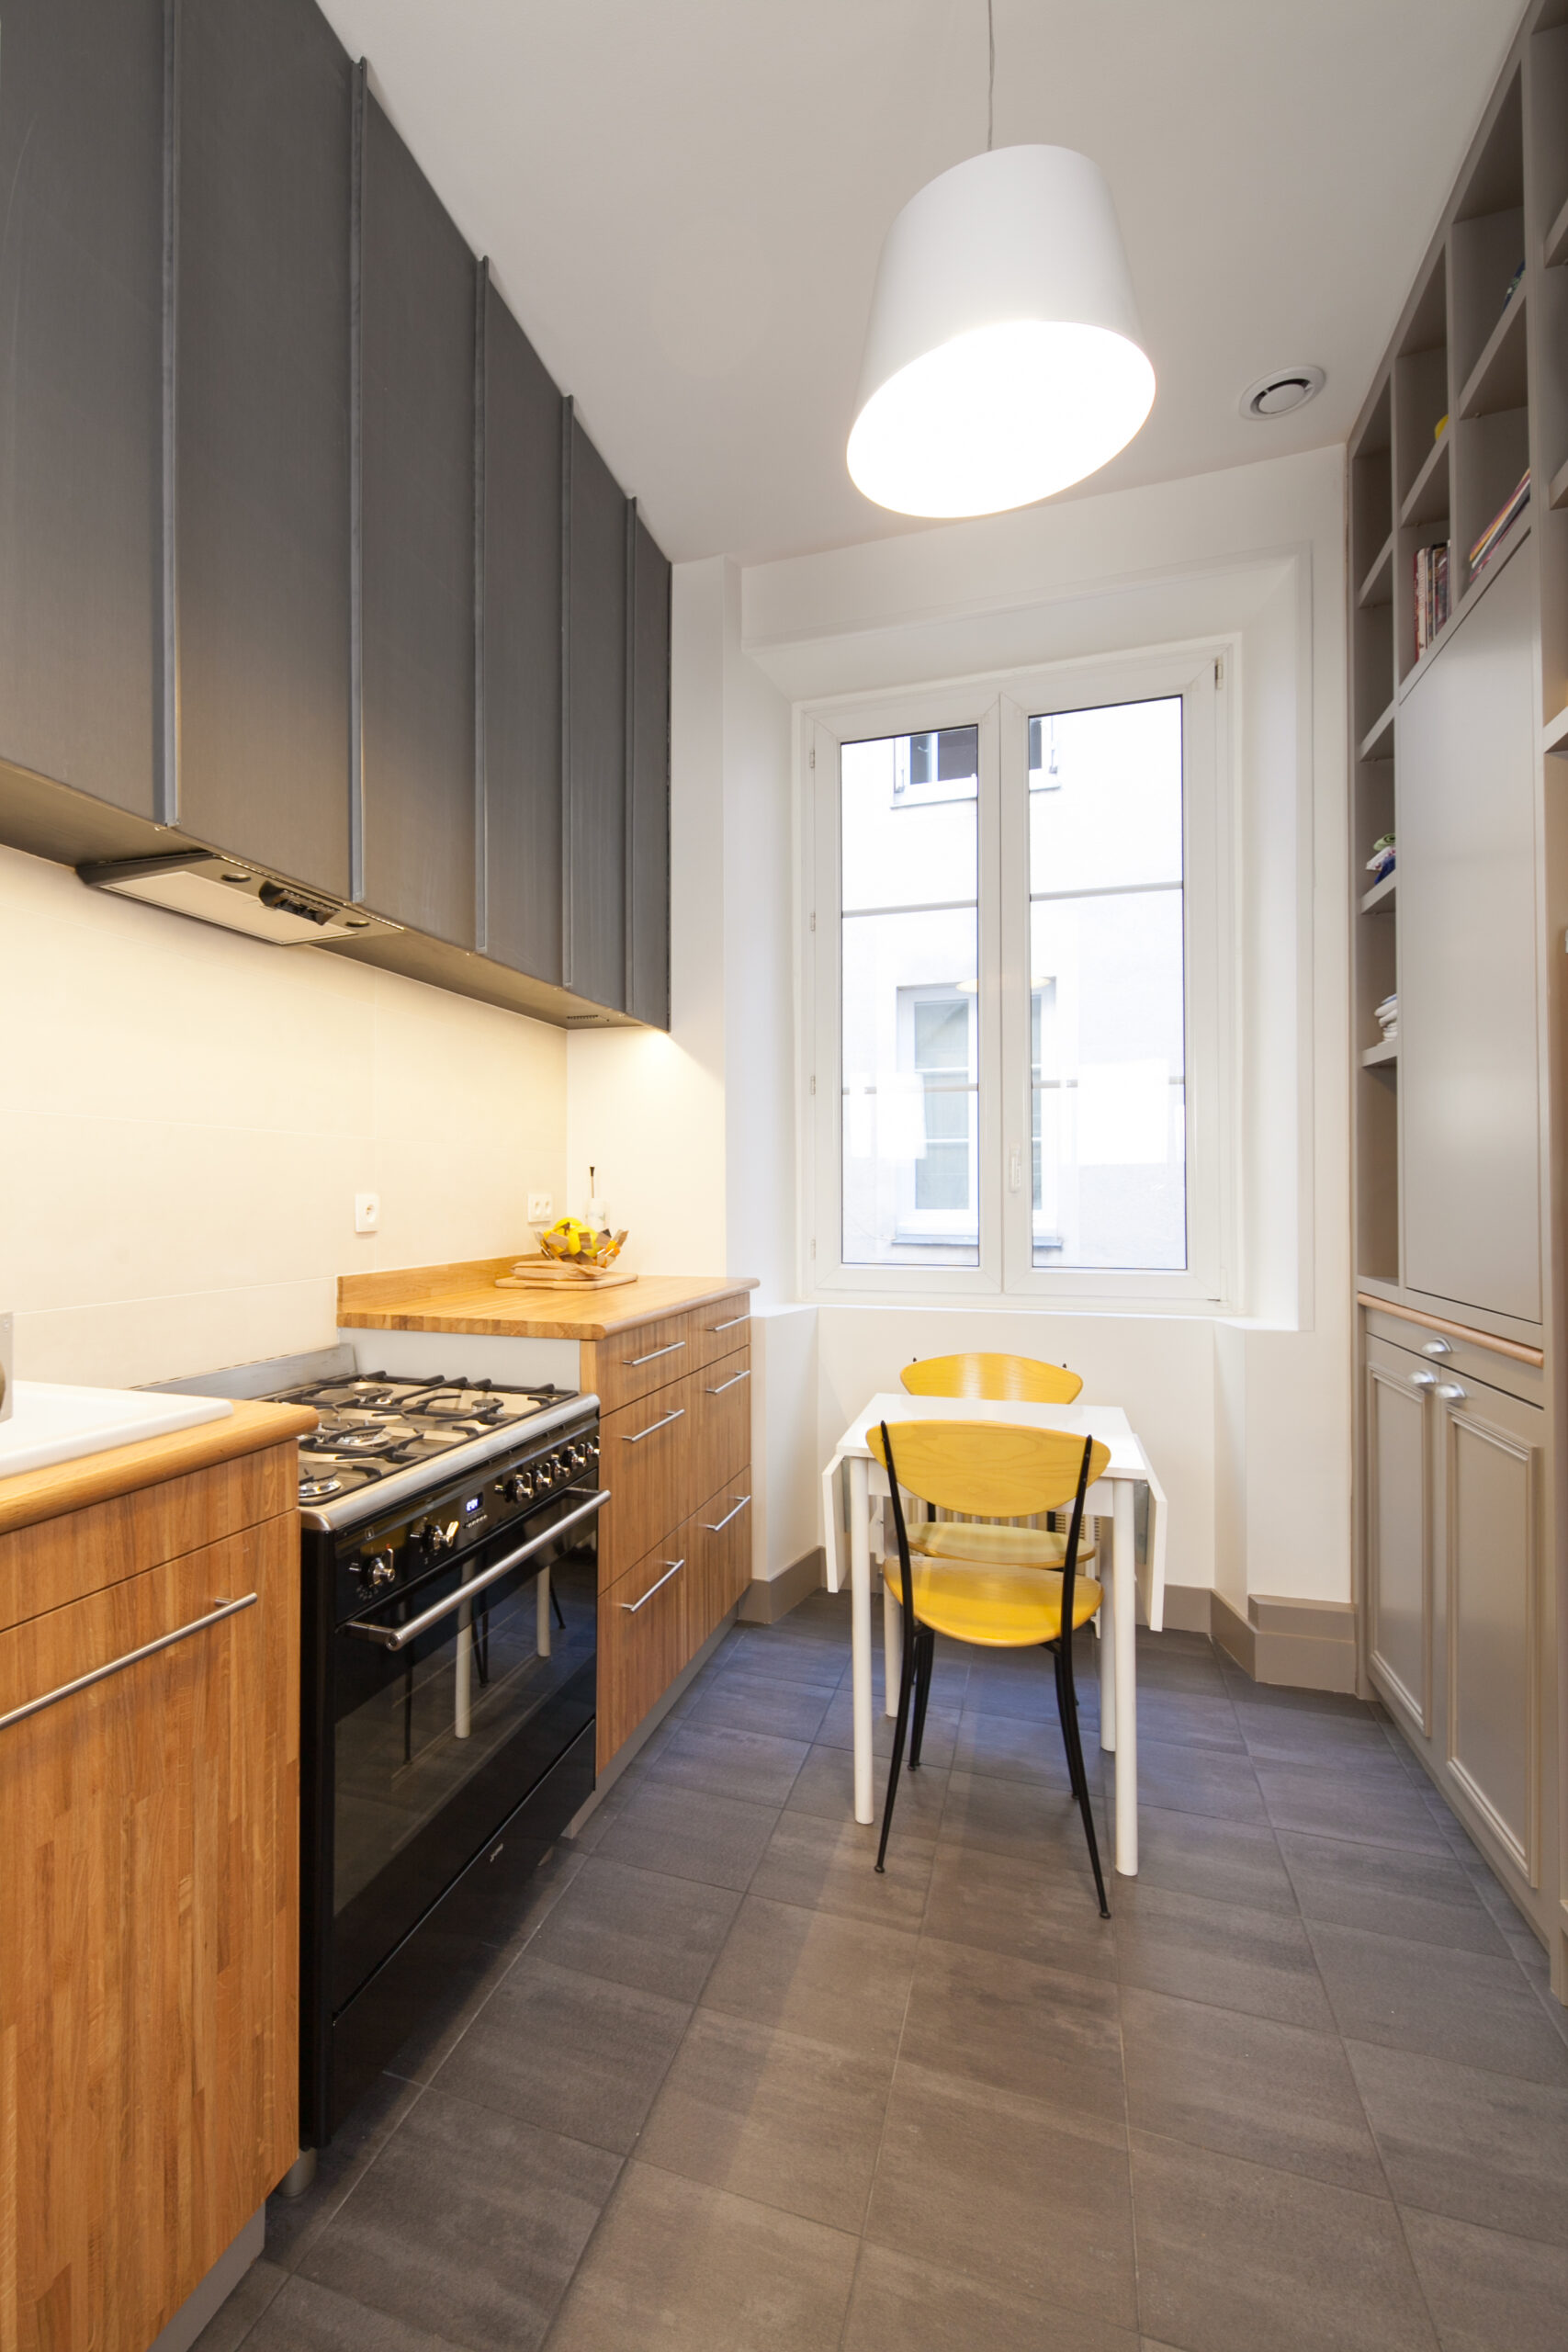 Atelier Bain Cuisine - Aménagement intérieur à Nantes (44)